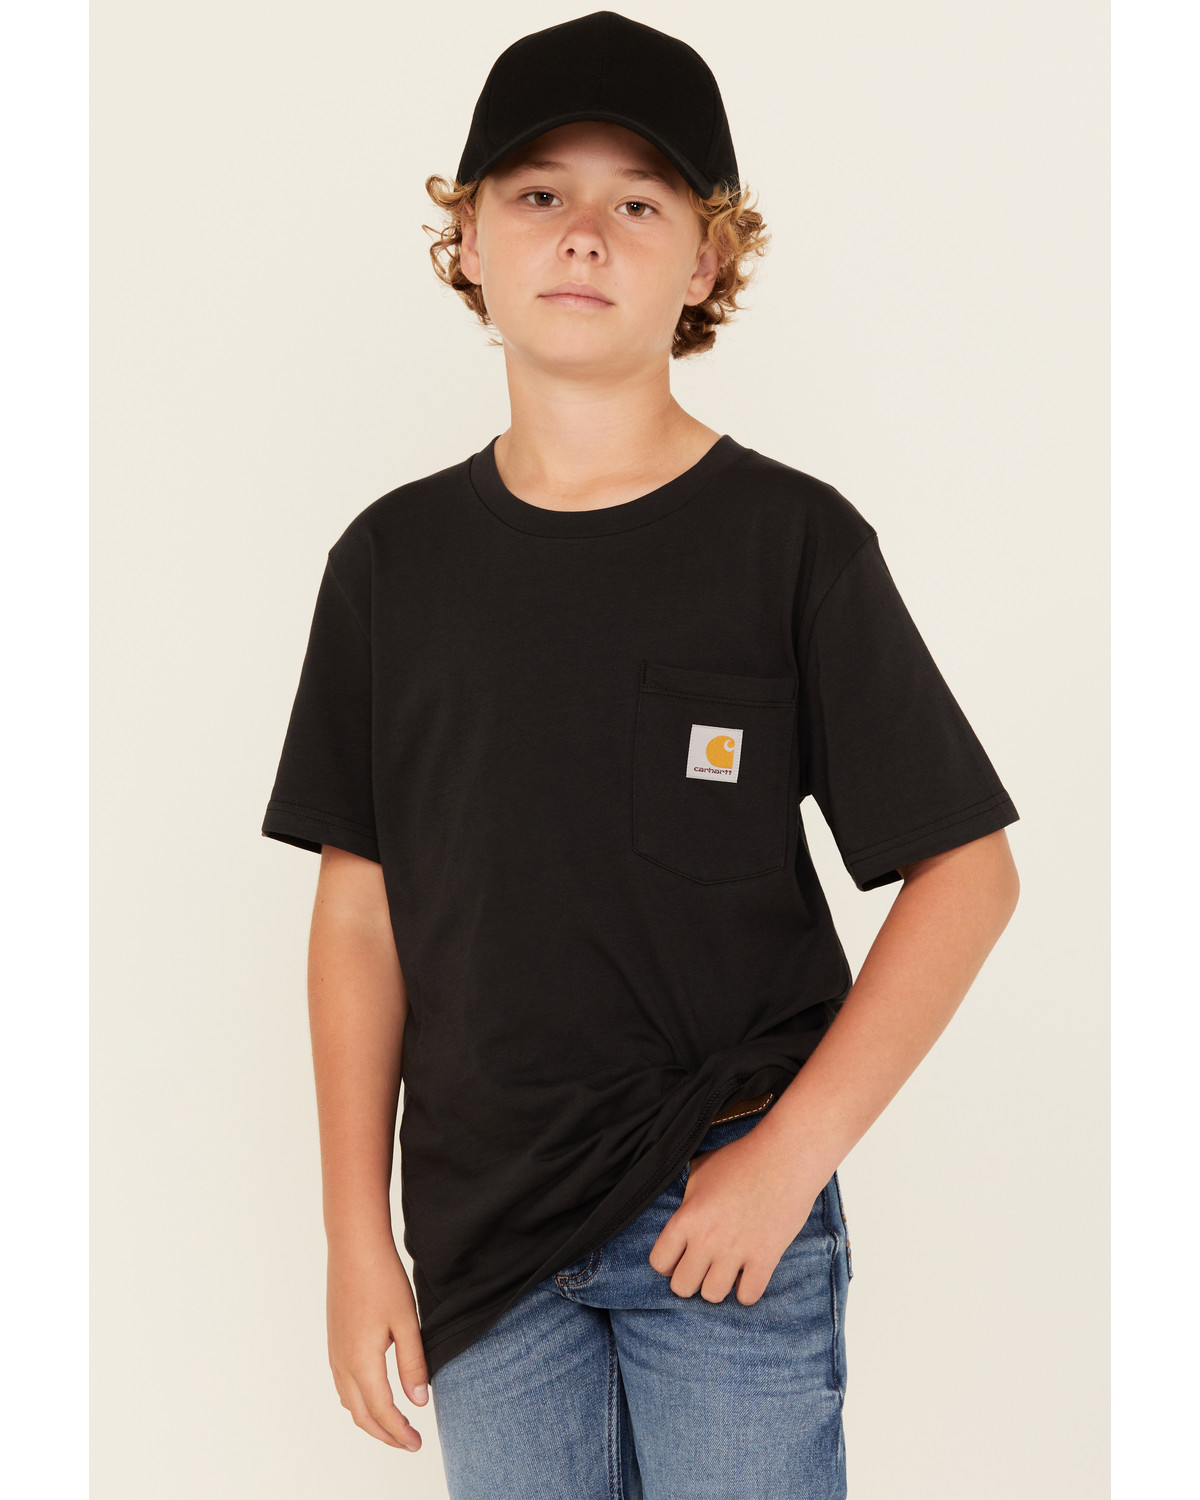 Carhartt Boys' Solid Short Sleeve Pocket T-Shirt